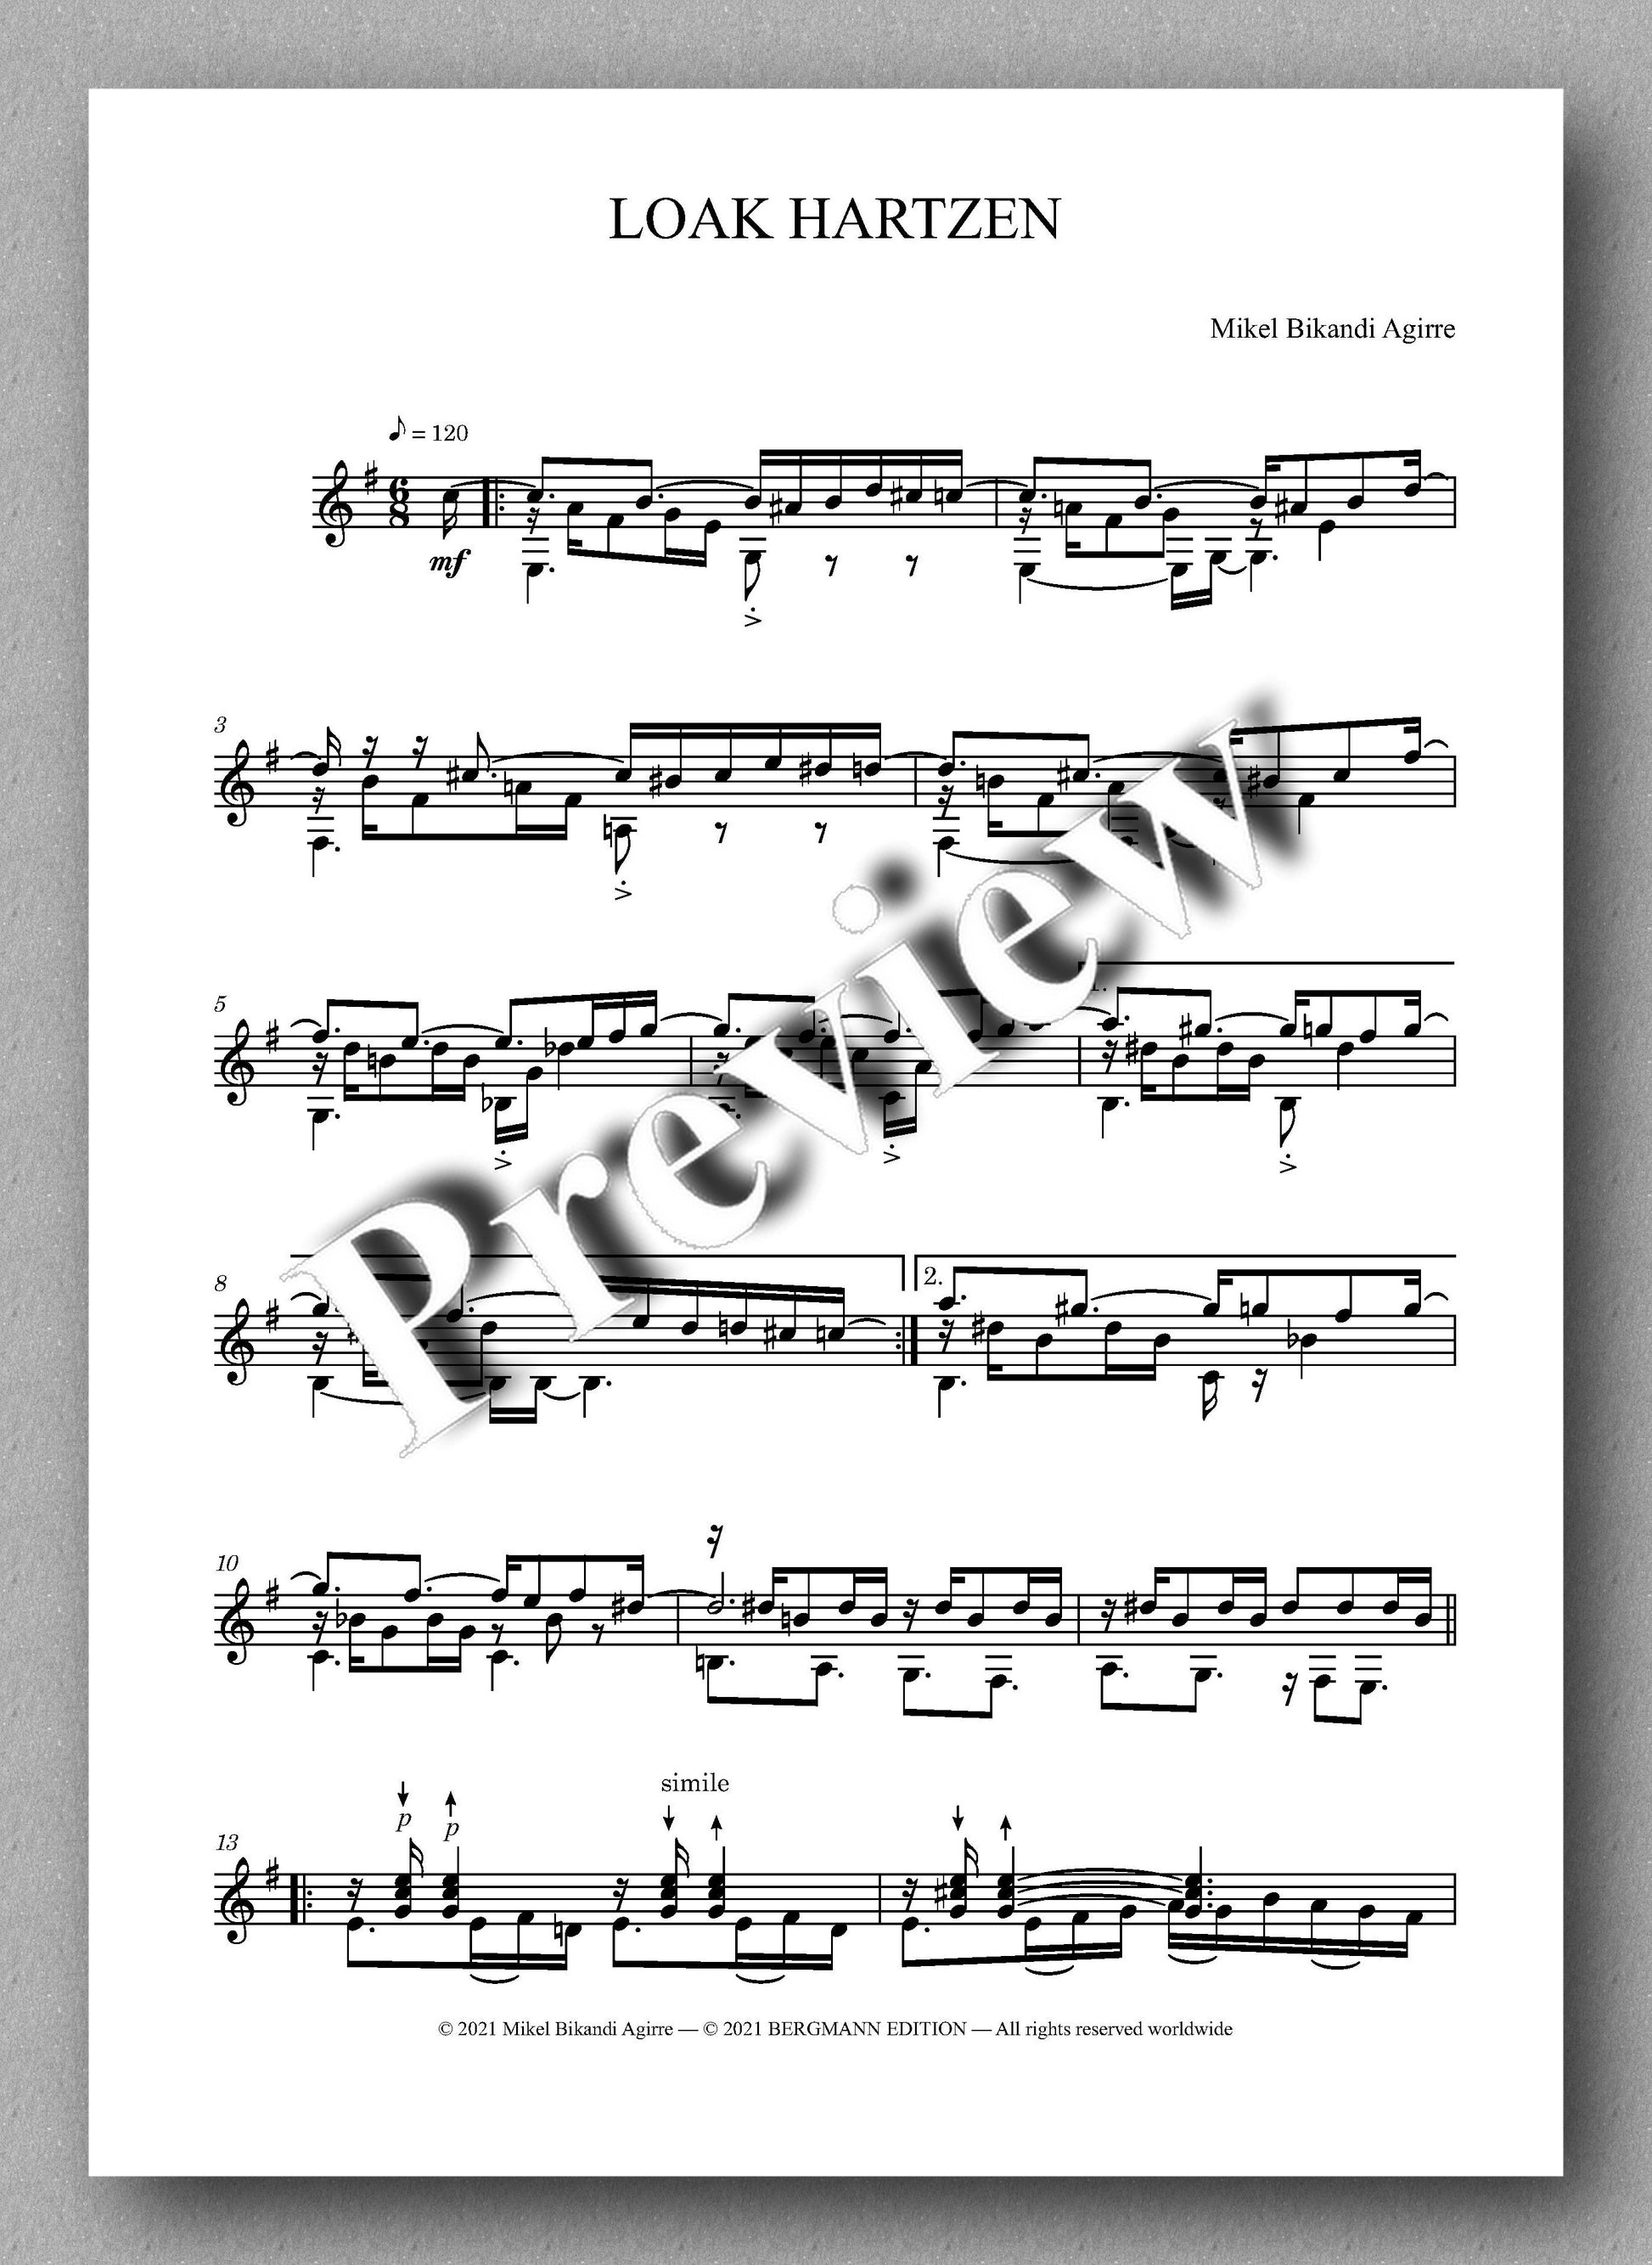 Bikandi, Loak Harzen - music score 1